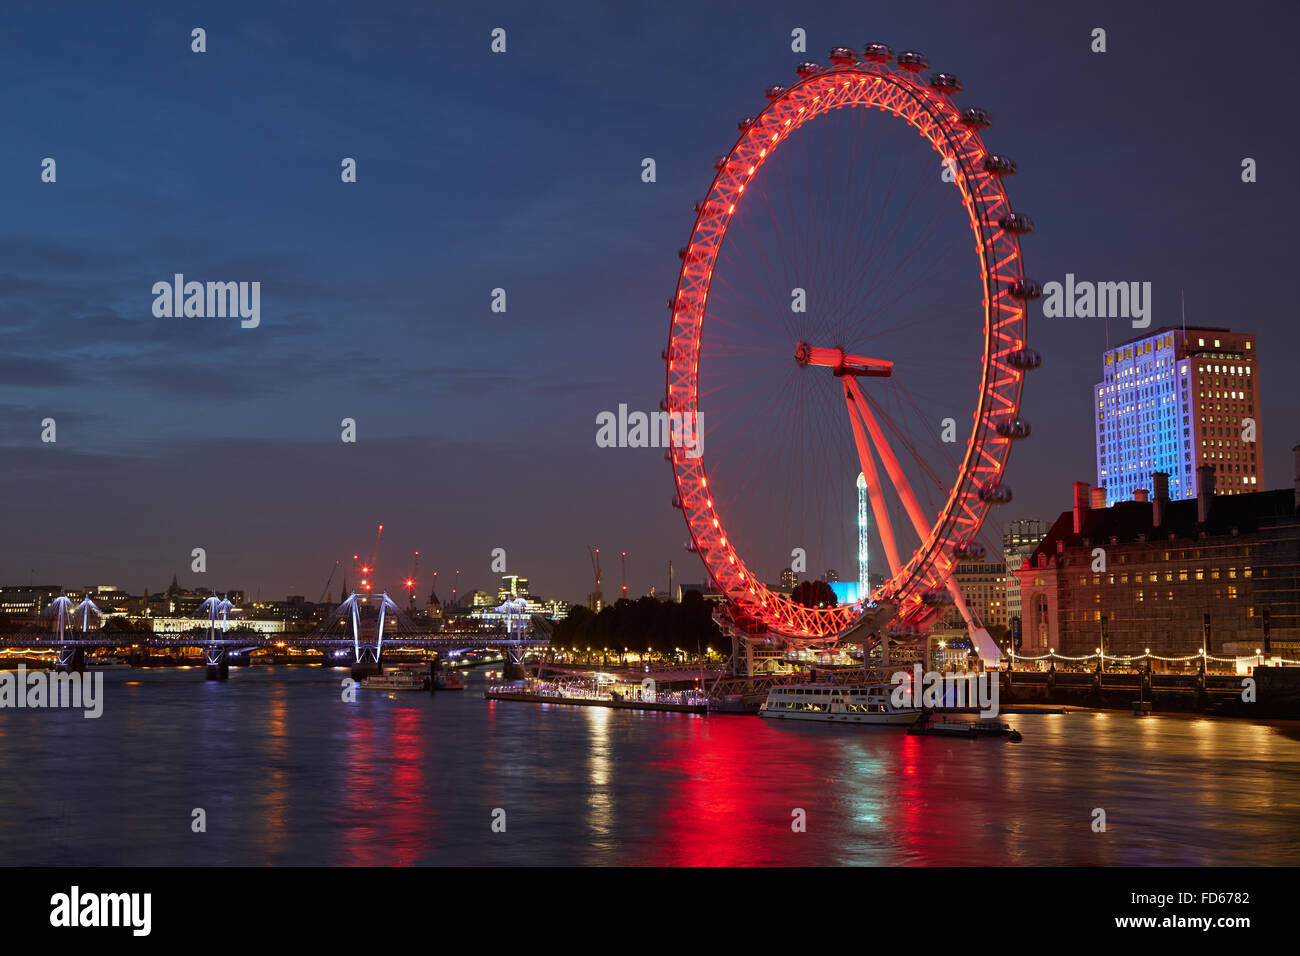 London Eye, ruota panoramica Ferris, illuminato in rosso e Thames river view nella notte Foto Stock